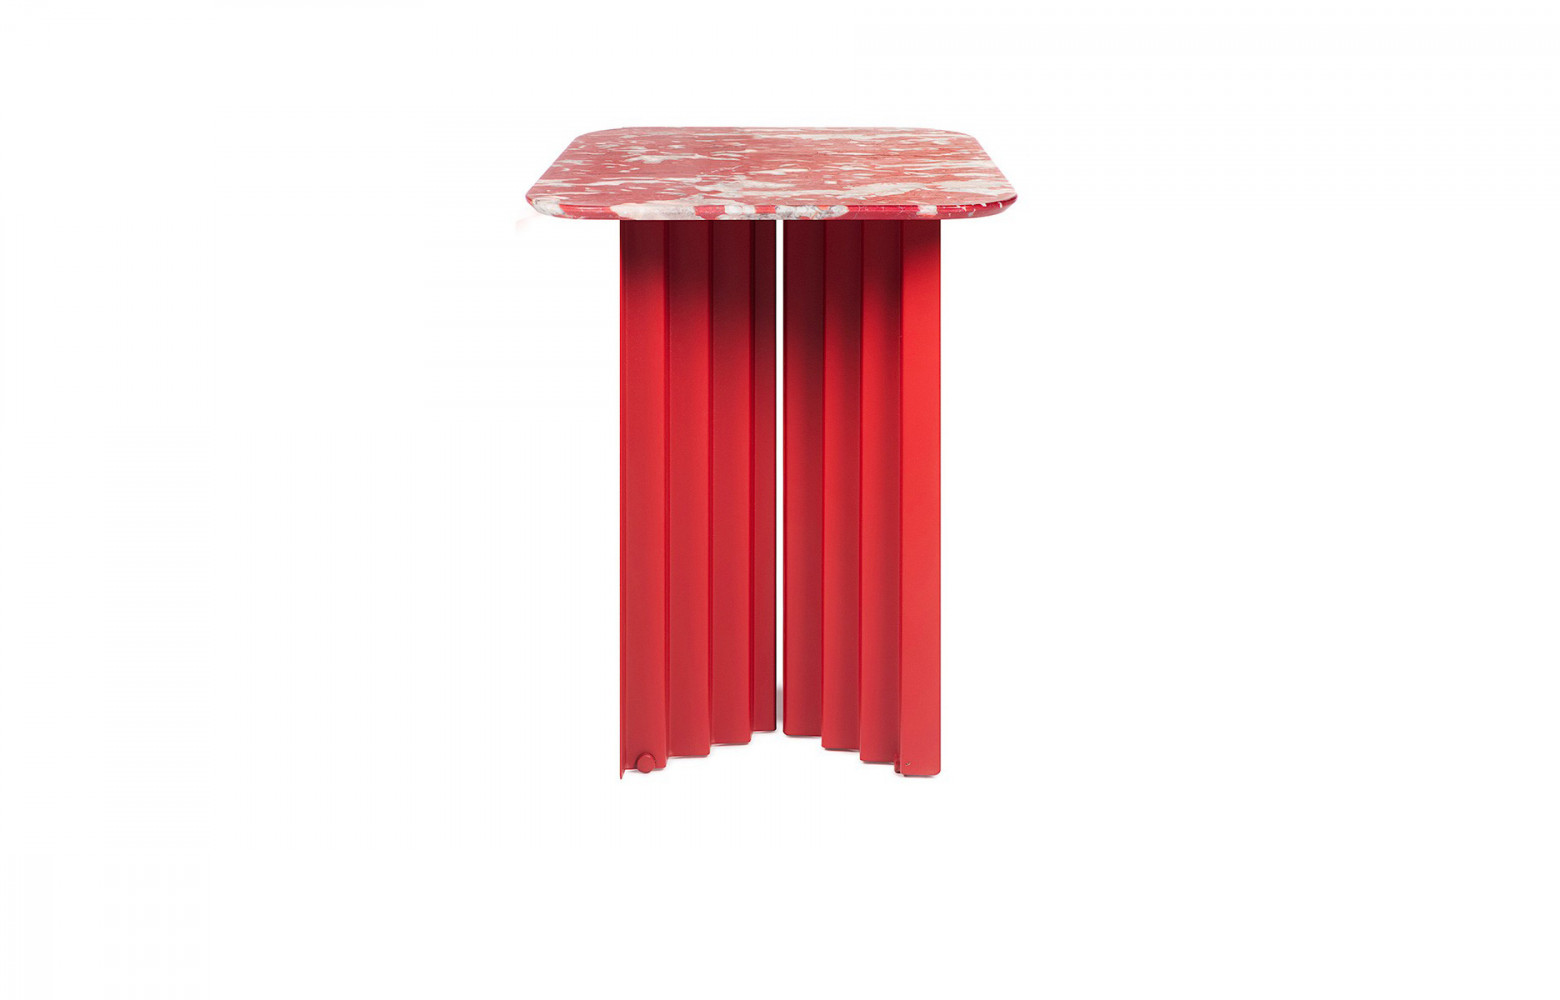 Table d’appoint Plec en marbre et acier, design Antoni Pallejà Office, 732 €. RS Barcelona